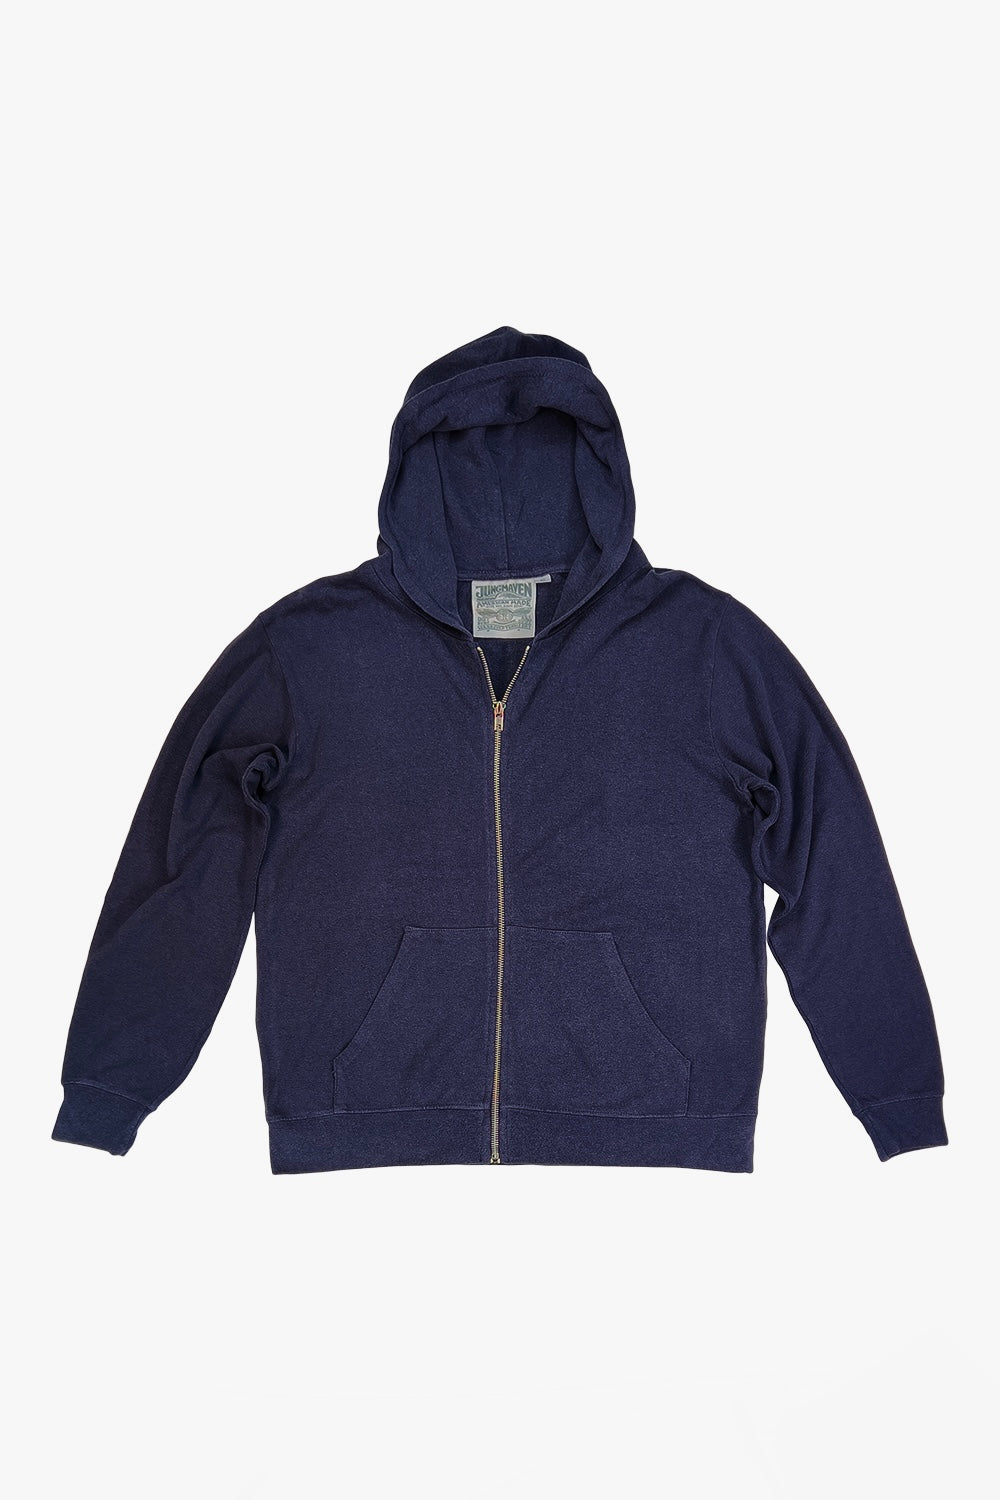 Newport Sweatshirt | Jungmaven Hemp Clothing & Accessories / Color: Navy